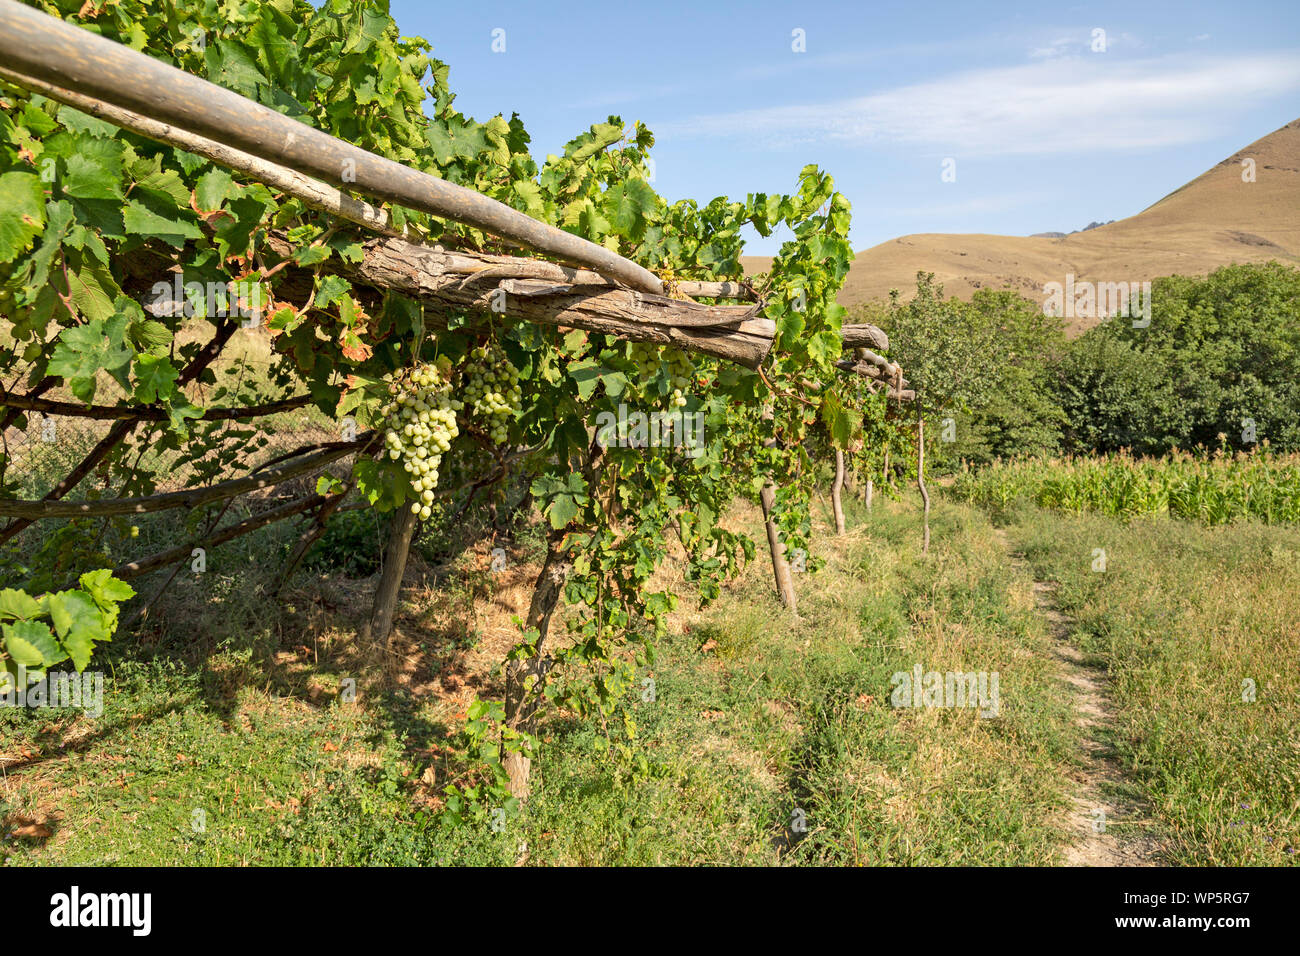 L'uva cresce su vigneti nei pressi del villaggio di Hayat in Uzbekistan. Foto Stock